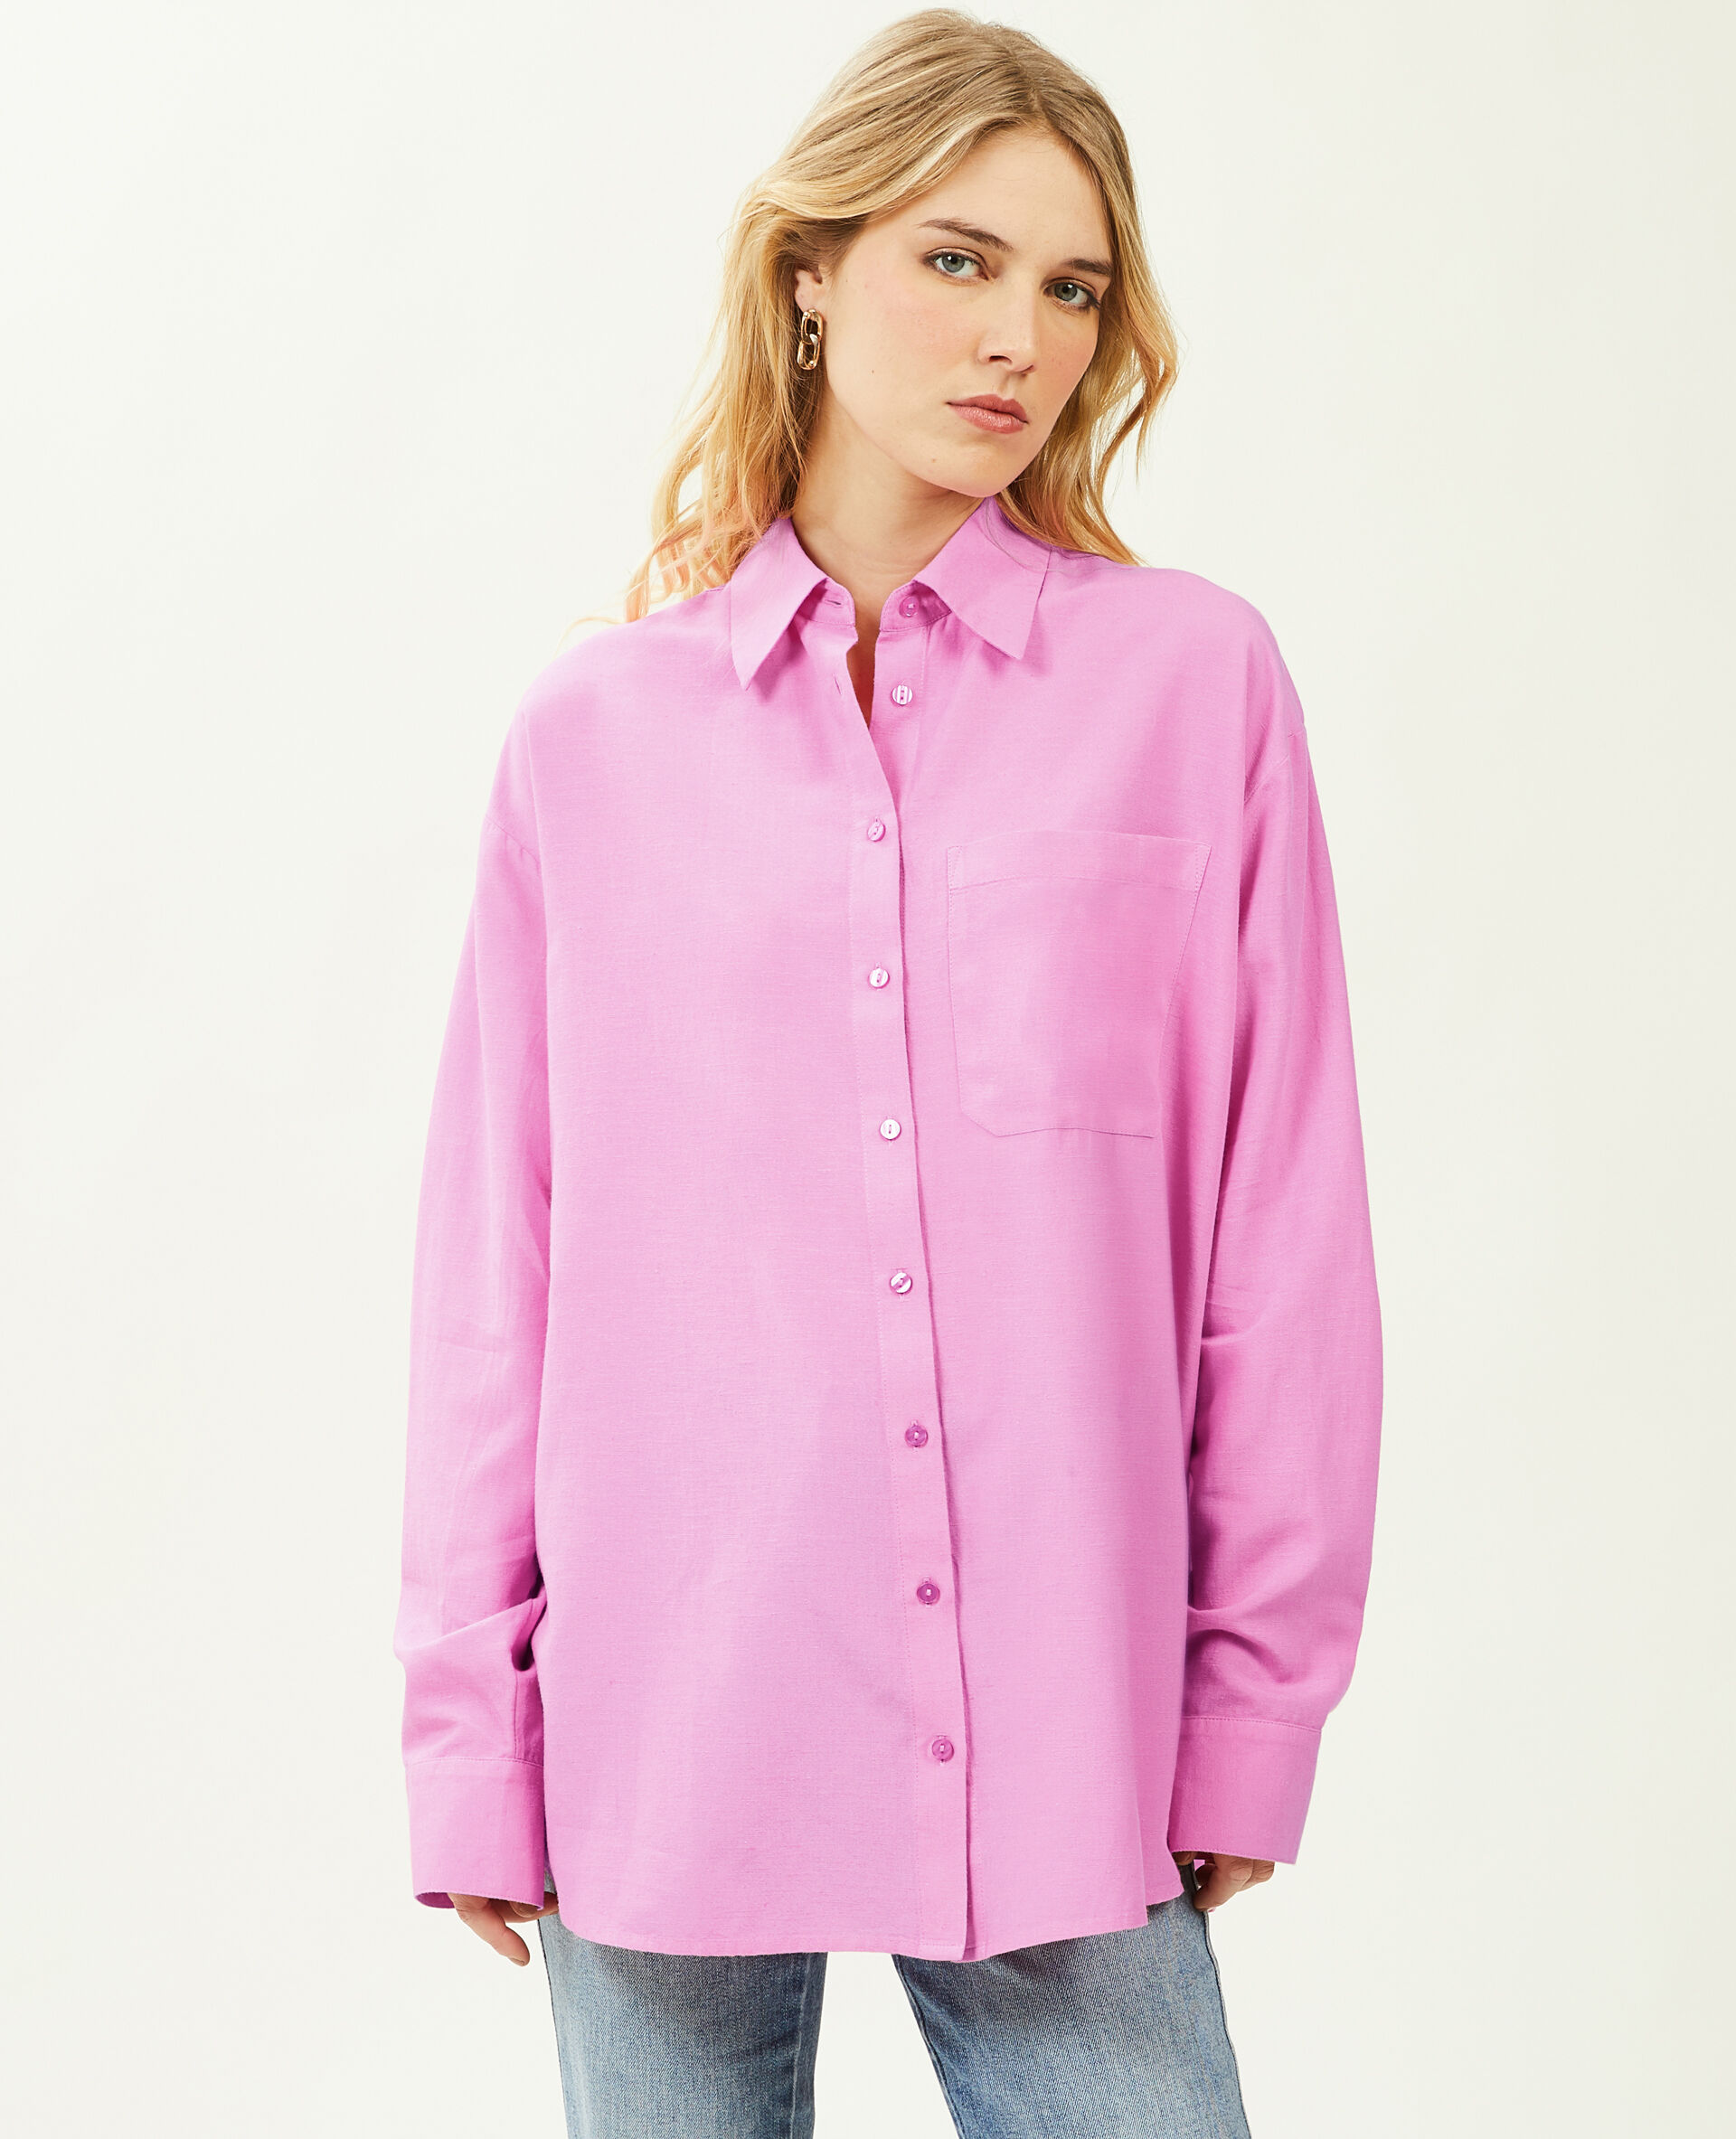 Chemise oversize Femme - Couleur rose - Taille XL - Blouse et Chemise Femme - PIMKIE